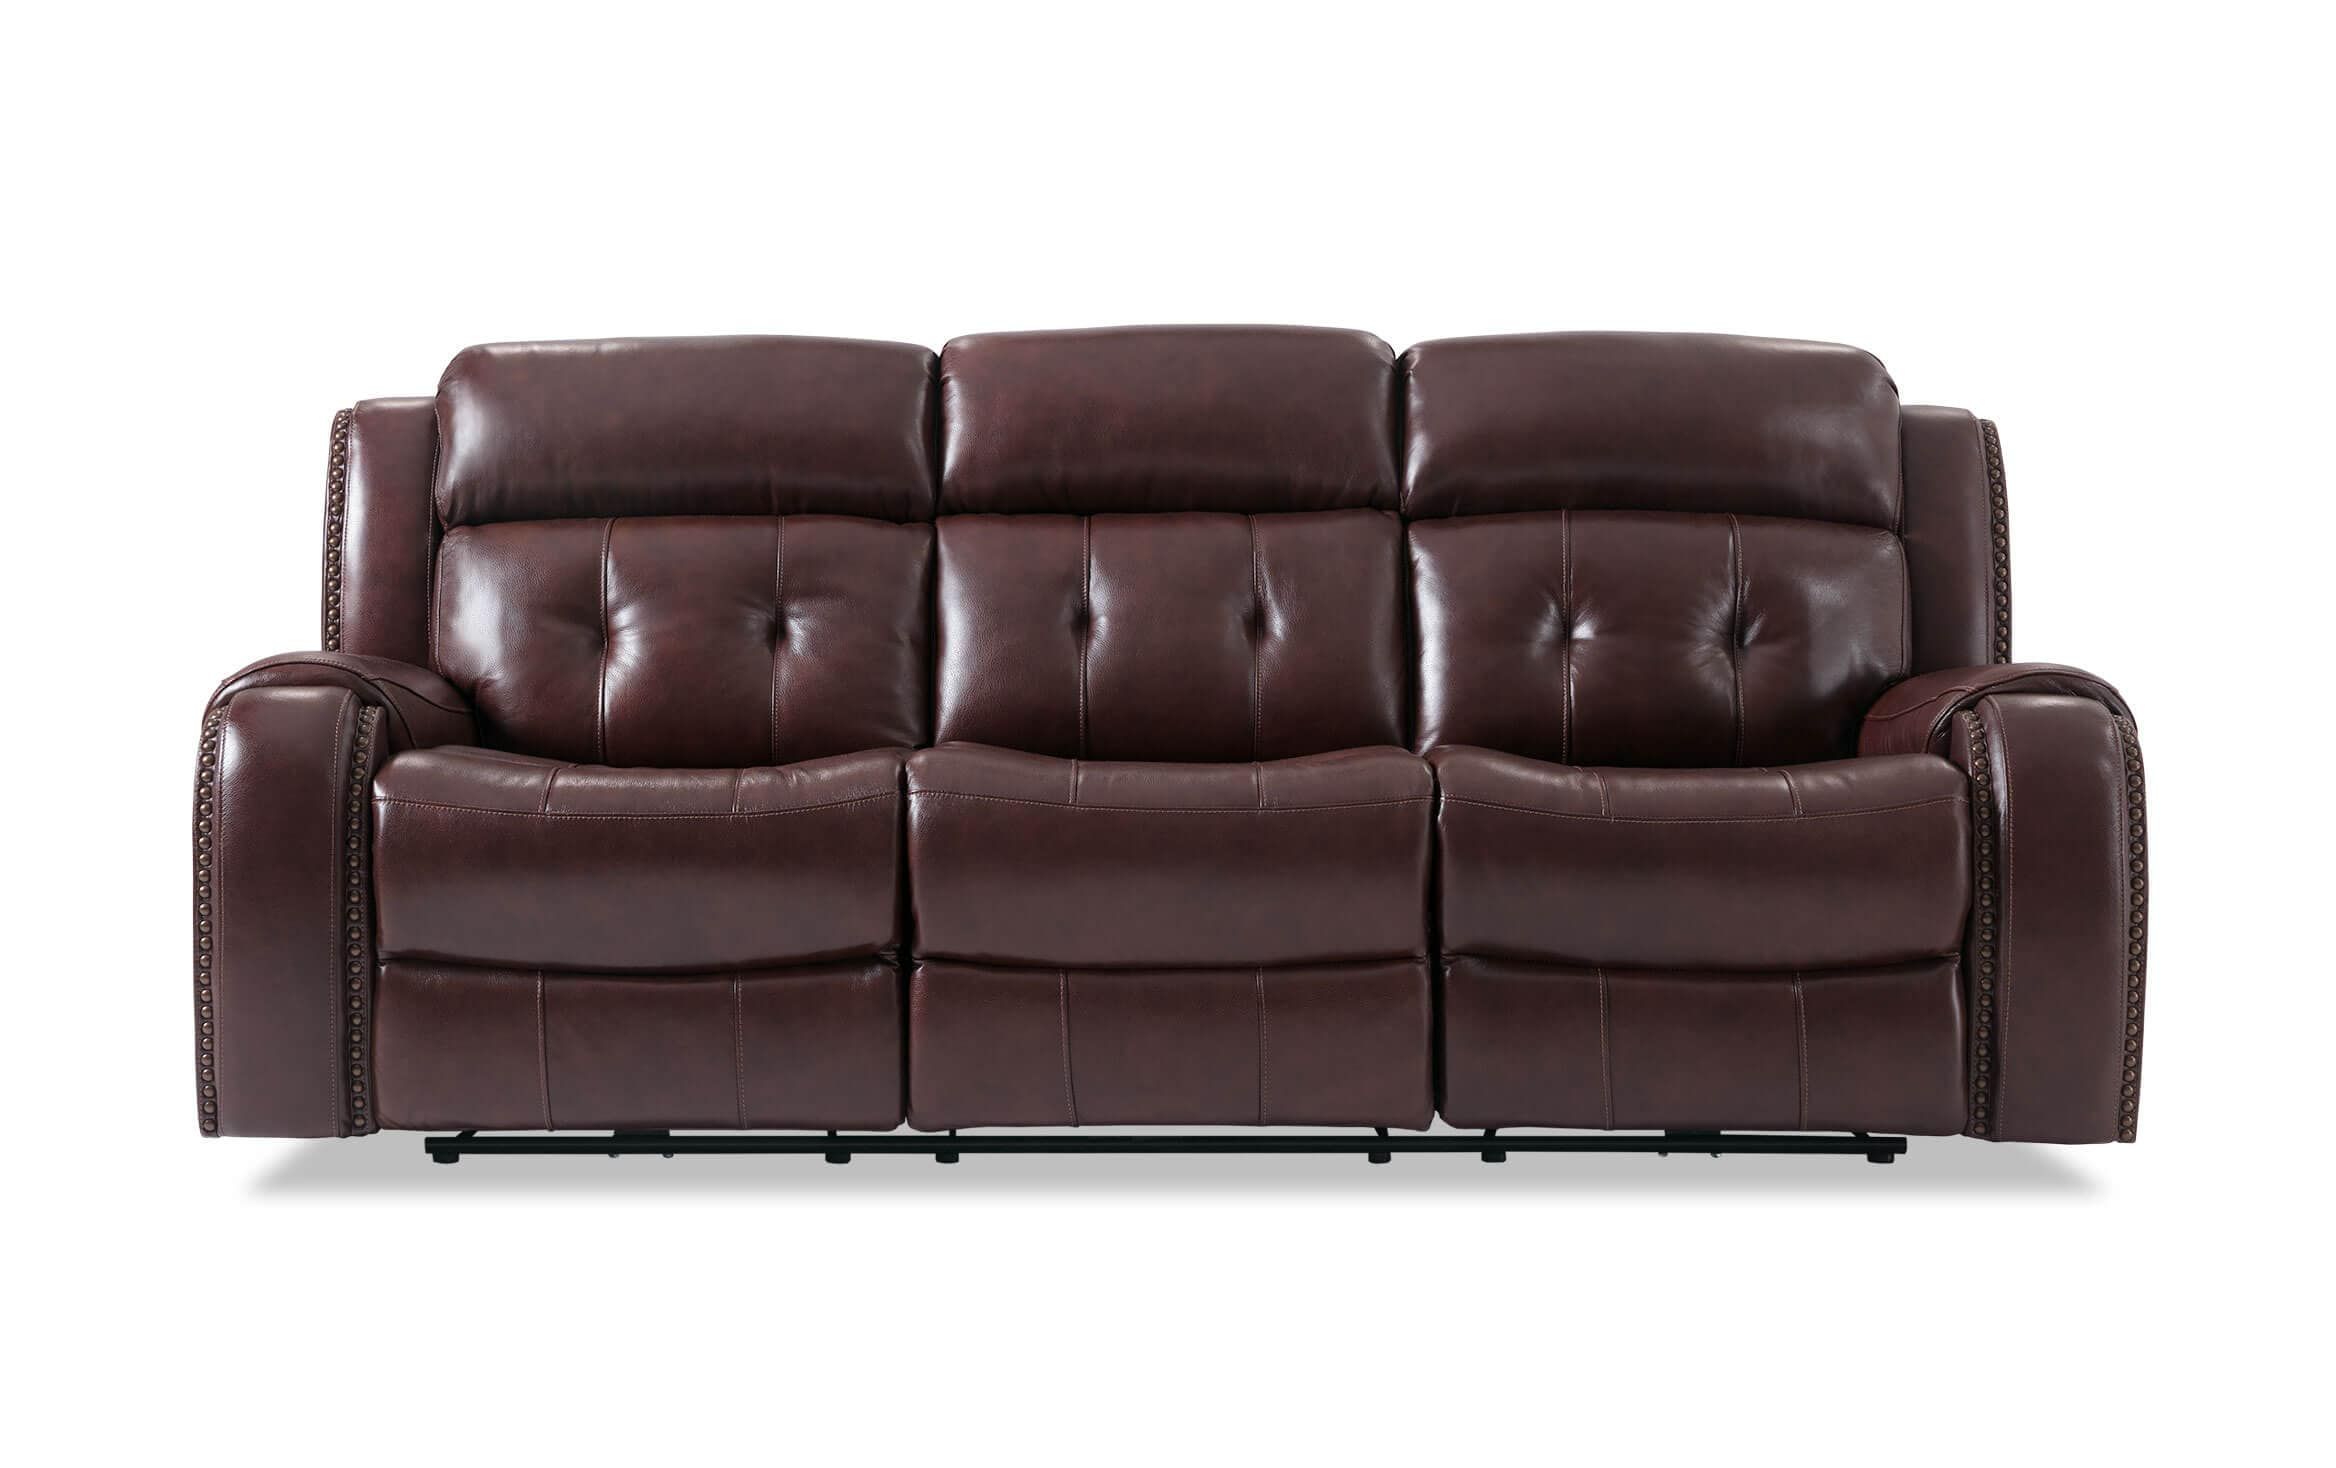 Bobs Furniture Leather Sofa : Trailblazer Gray Leather With Trailblazer Gray Leather Power Reclining Sofas (View 4 of 15)